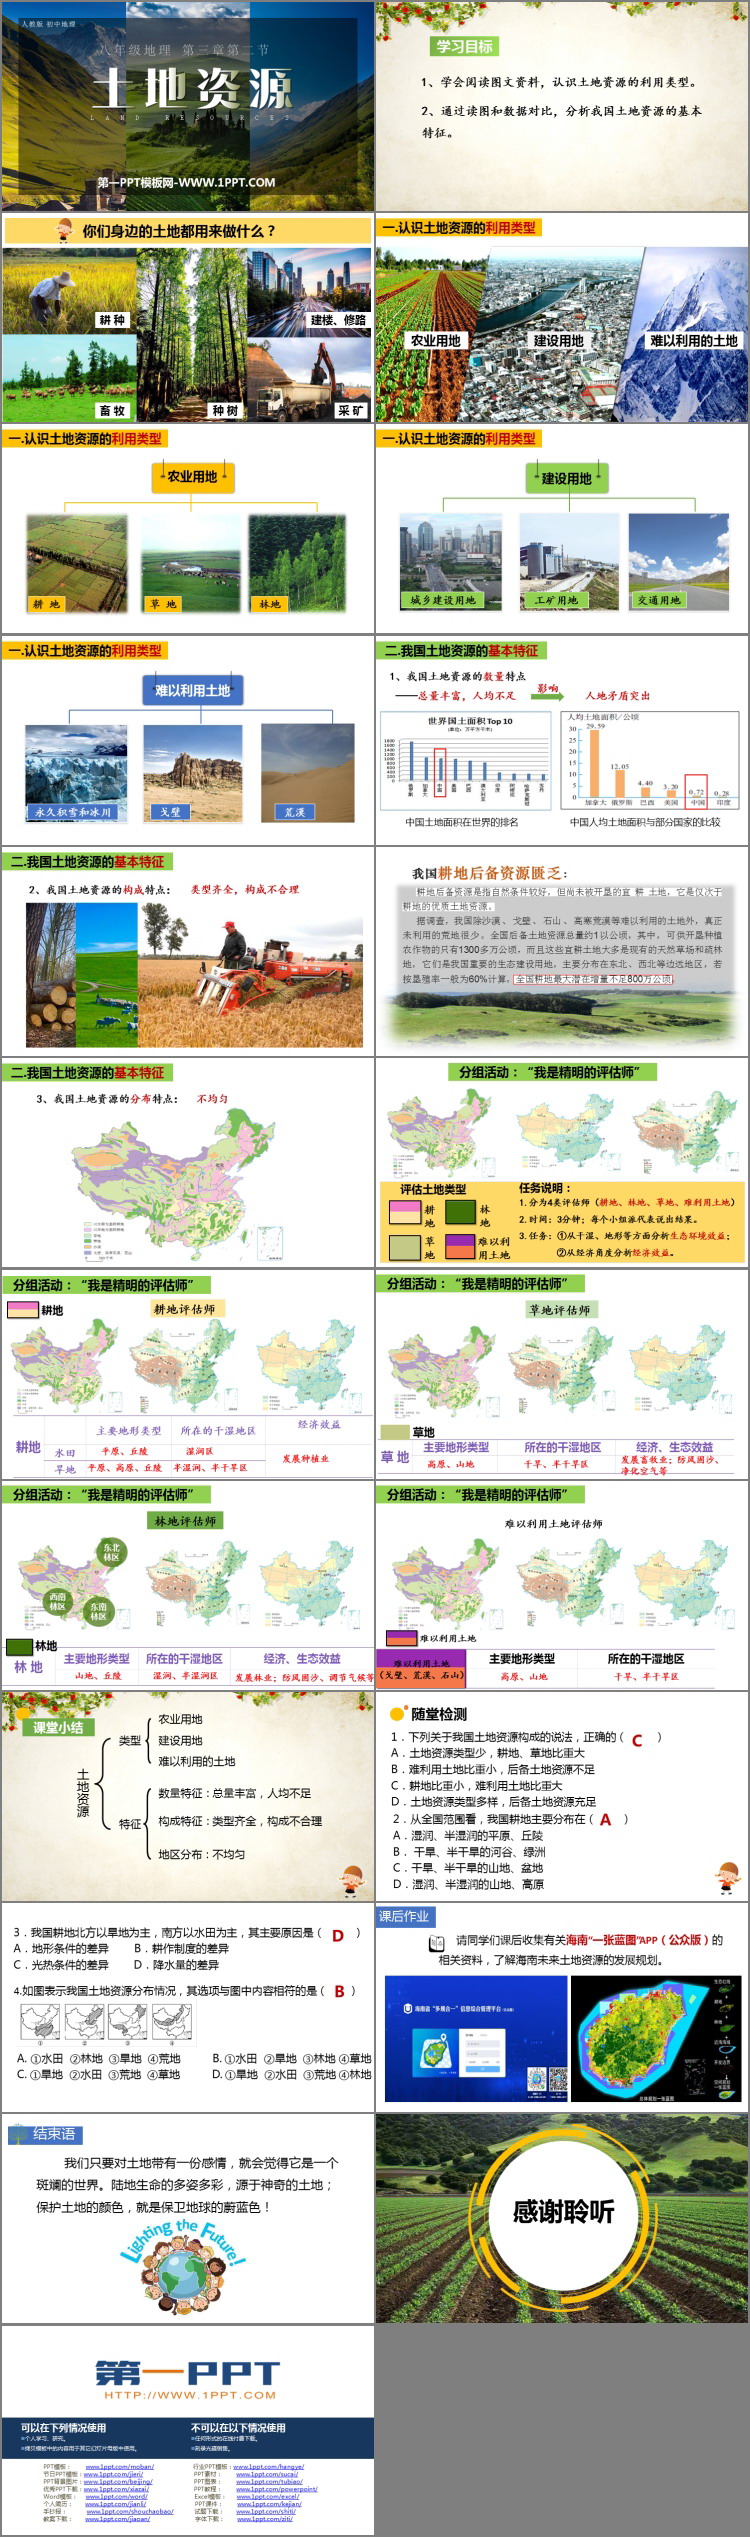 《土地资源》中国的自然资源PPT下载-预览图02